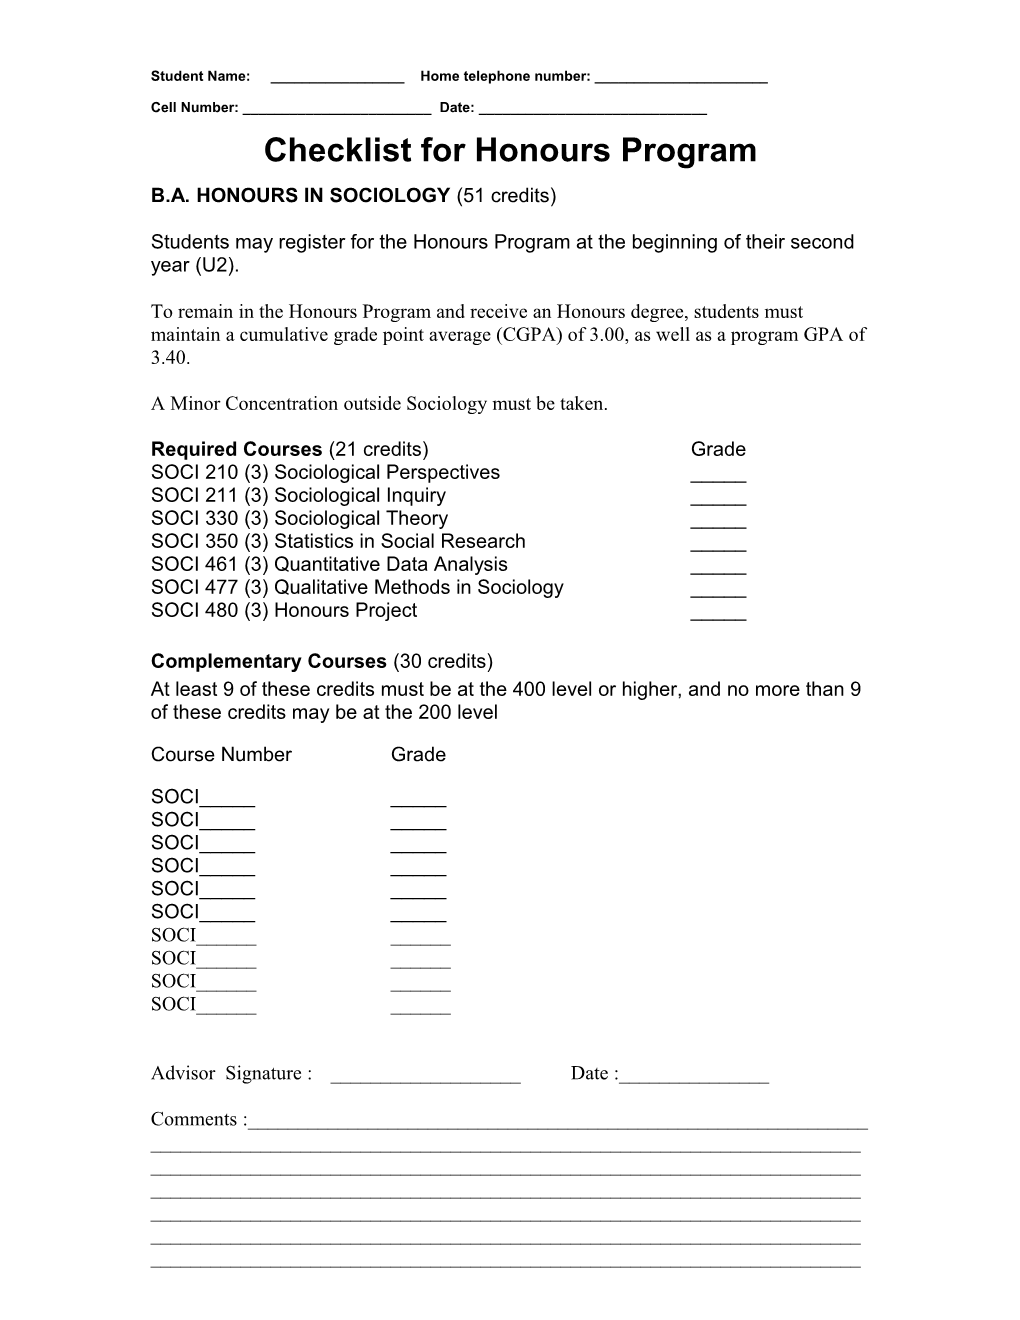 New Checklist for Honours Program